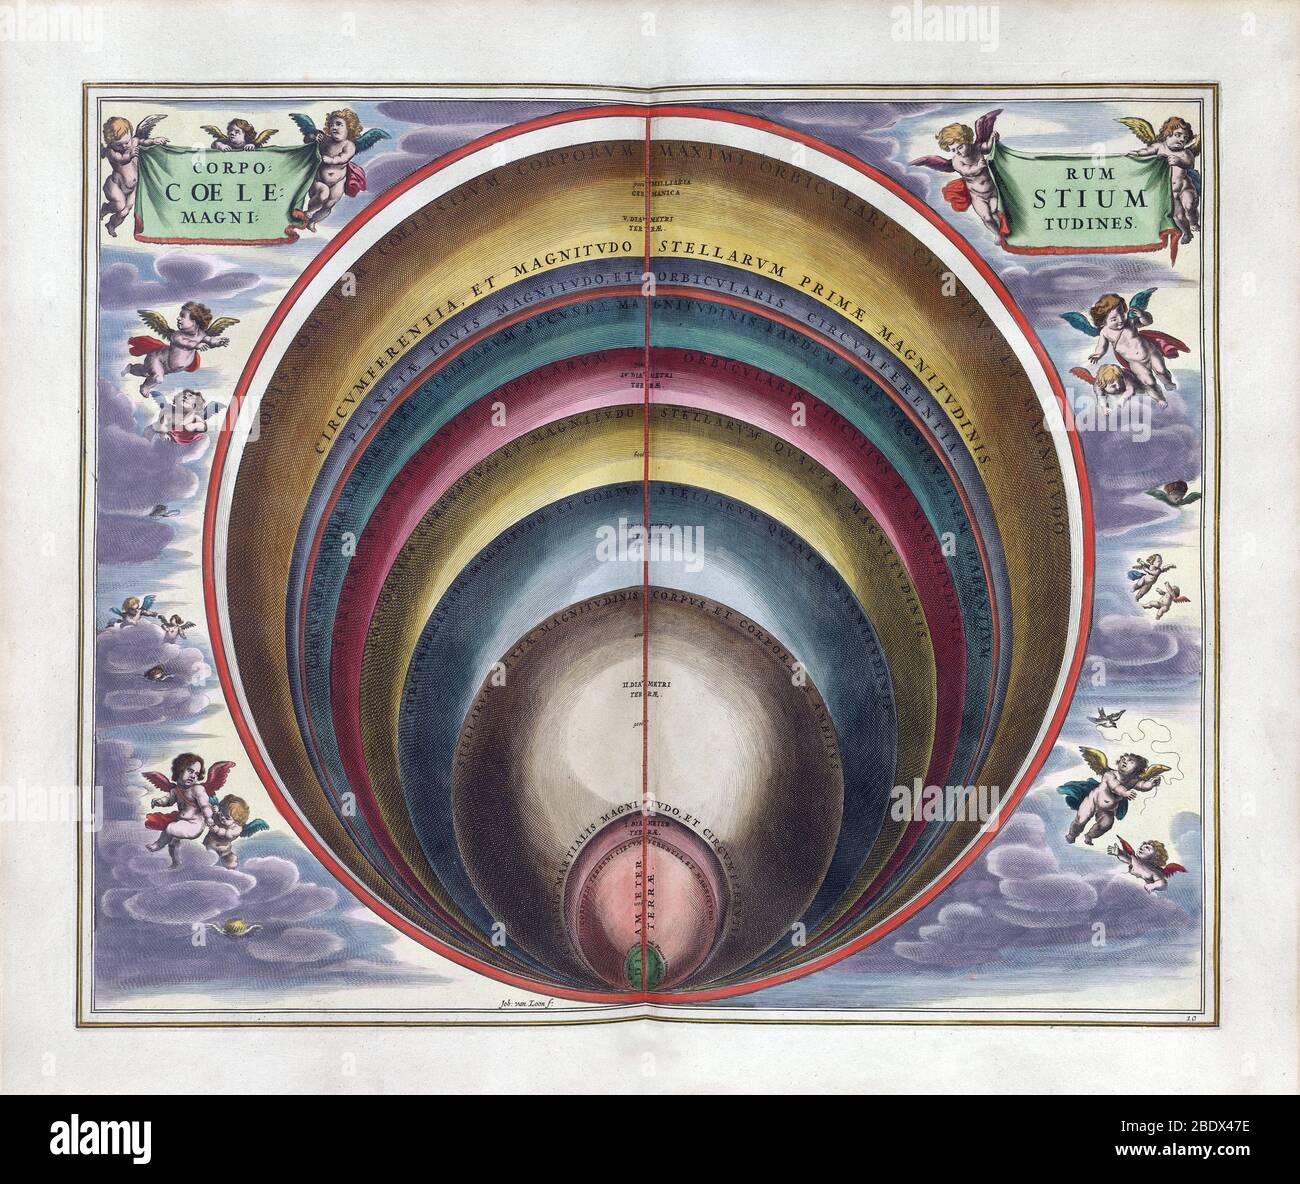 Corpi celesti, Harmonia Macrocosmica, 1660 Foto Stock